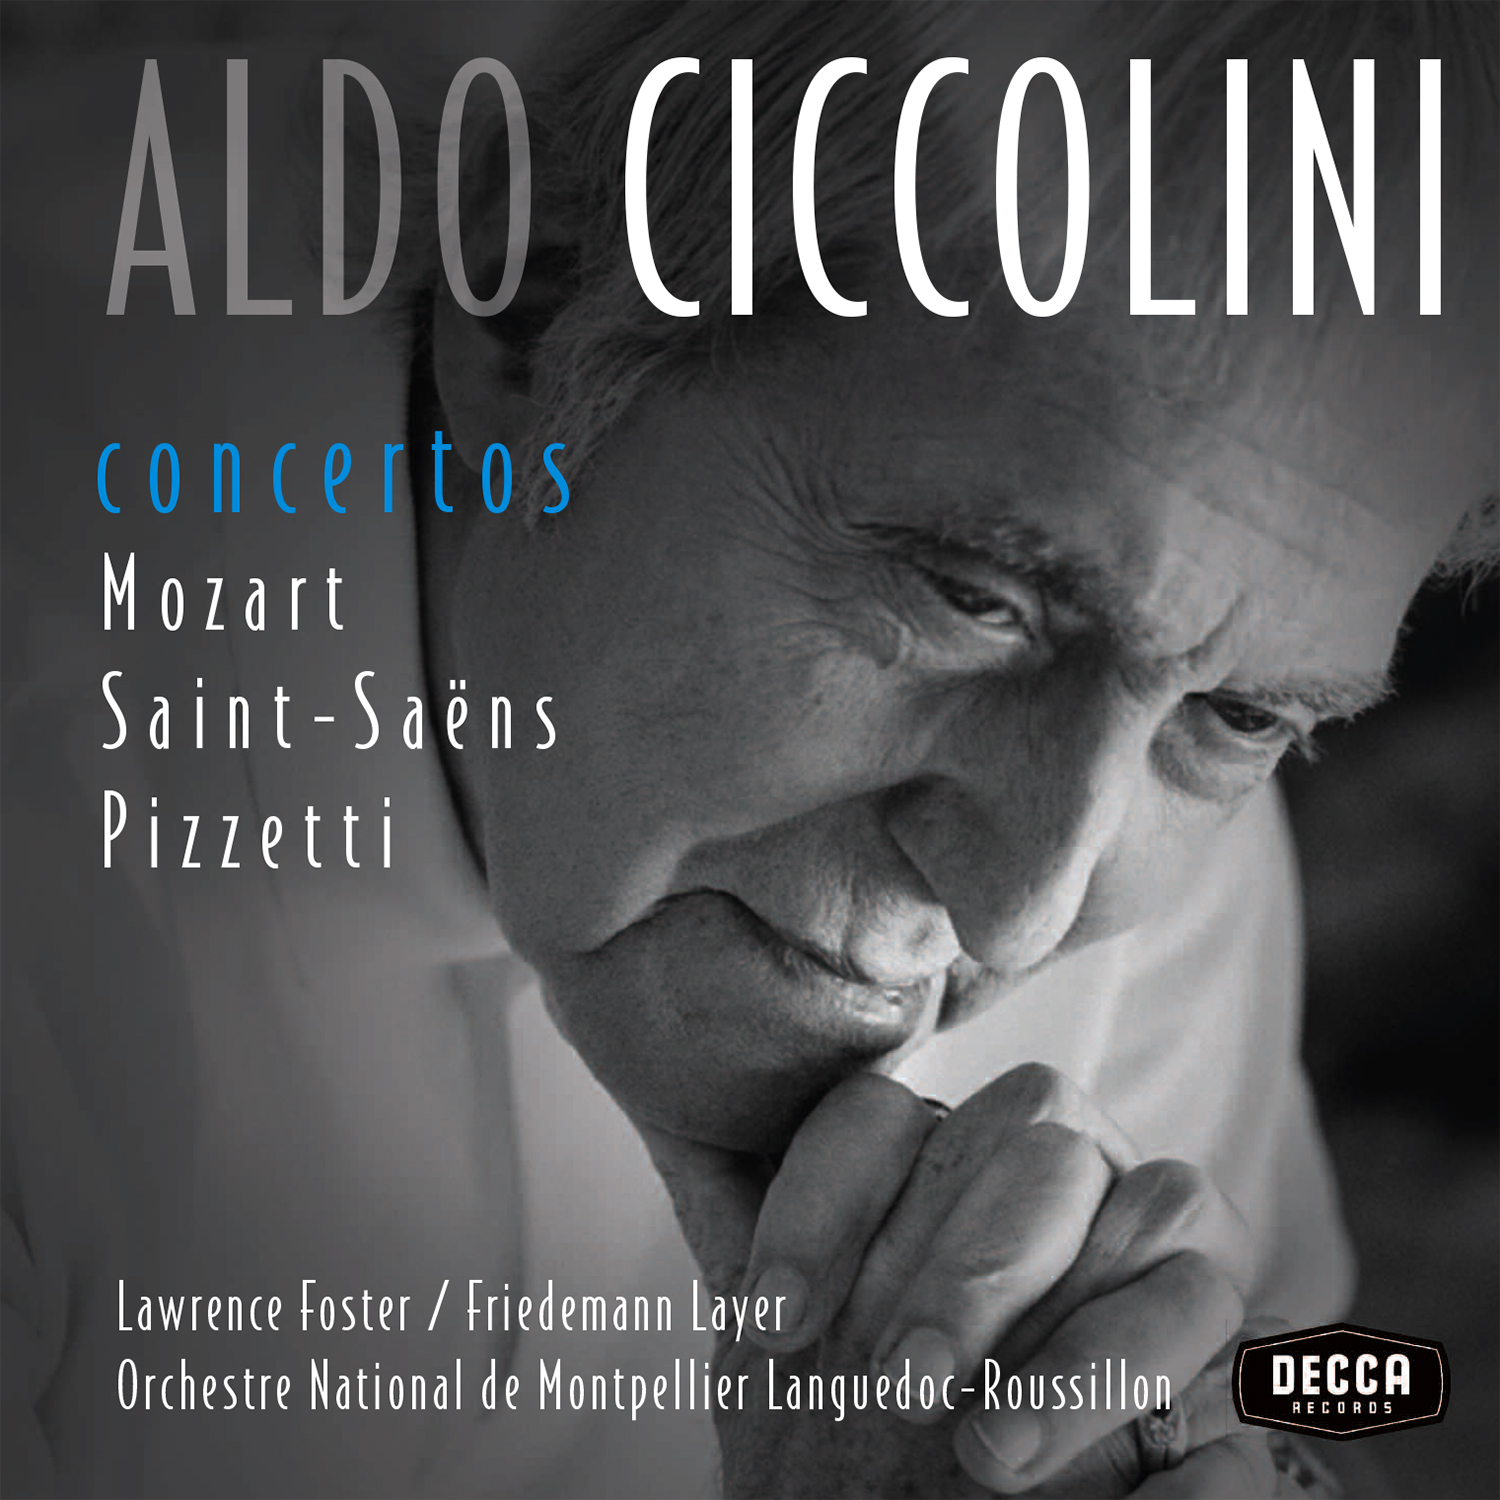 Aldo Ciccolini: Mozart, Saint-Saëns e Pizzetti in un unico box